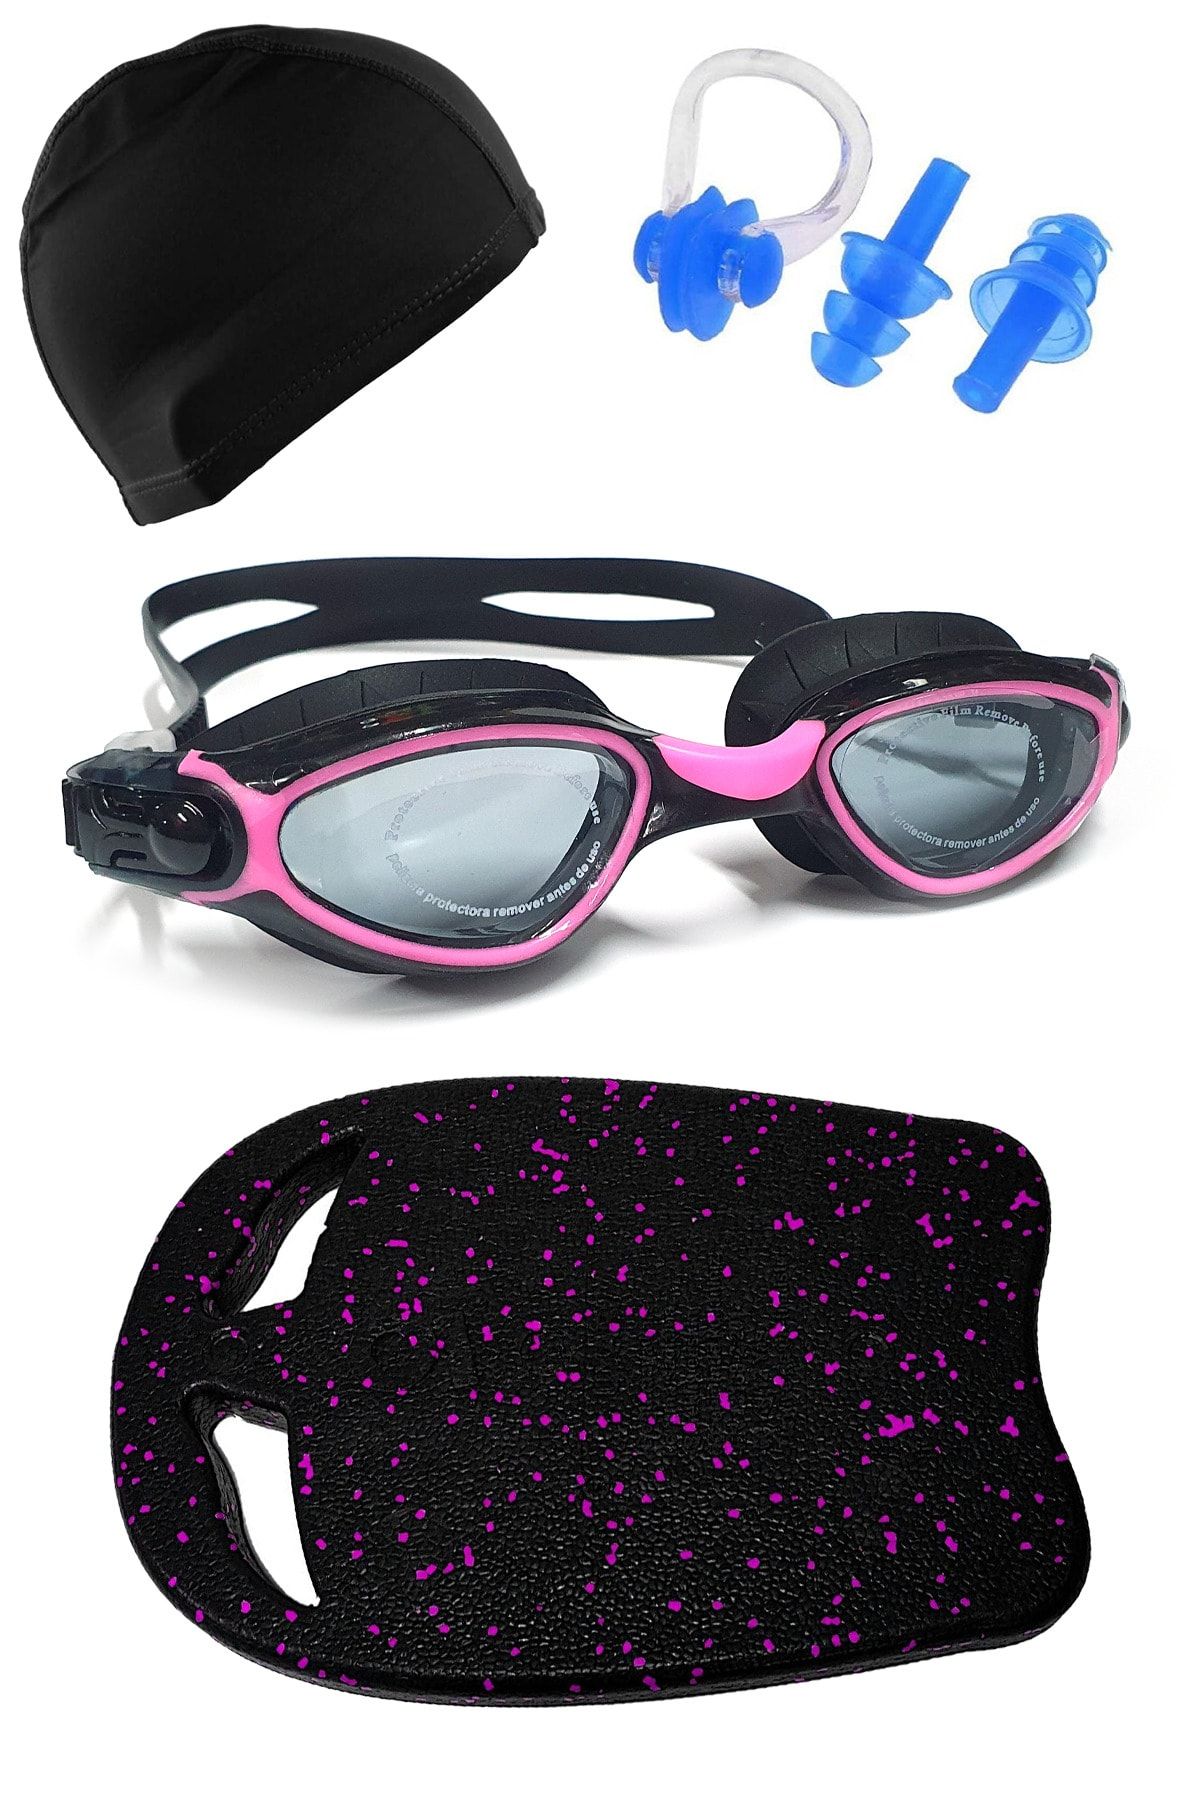 Tosima Pro Yüzücü Seti Yüzücü Gözlüğü Ve Likra Bone Kulak Tıkacı Burun Klipsi Ve Yüzücü Tahtası Seti